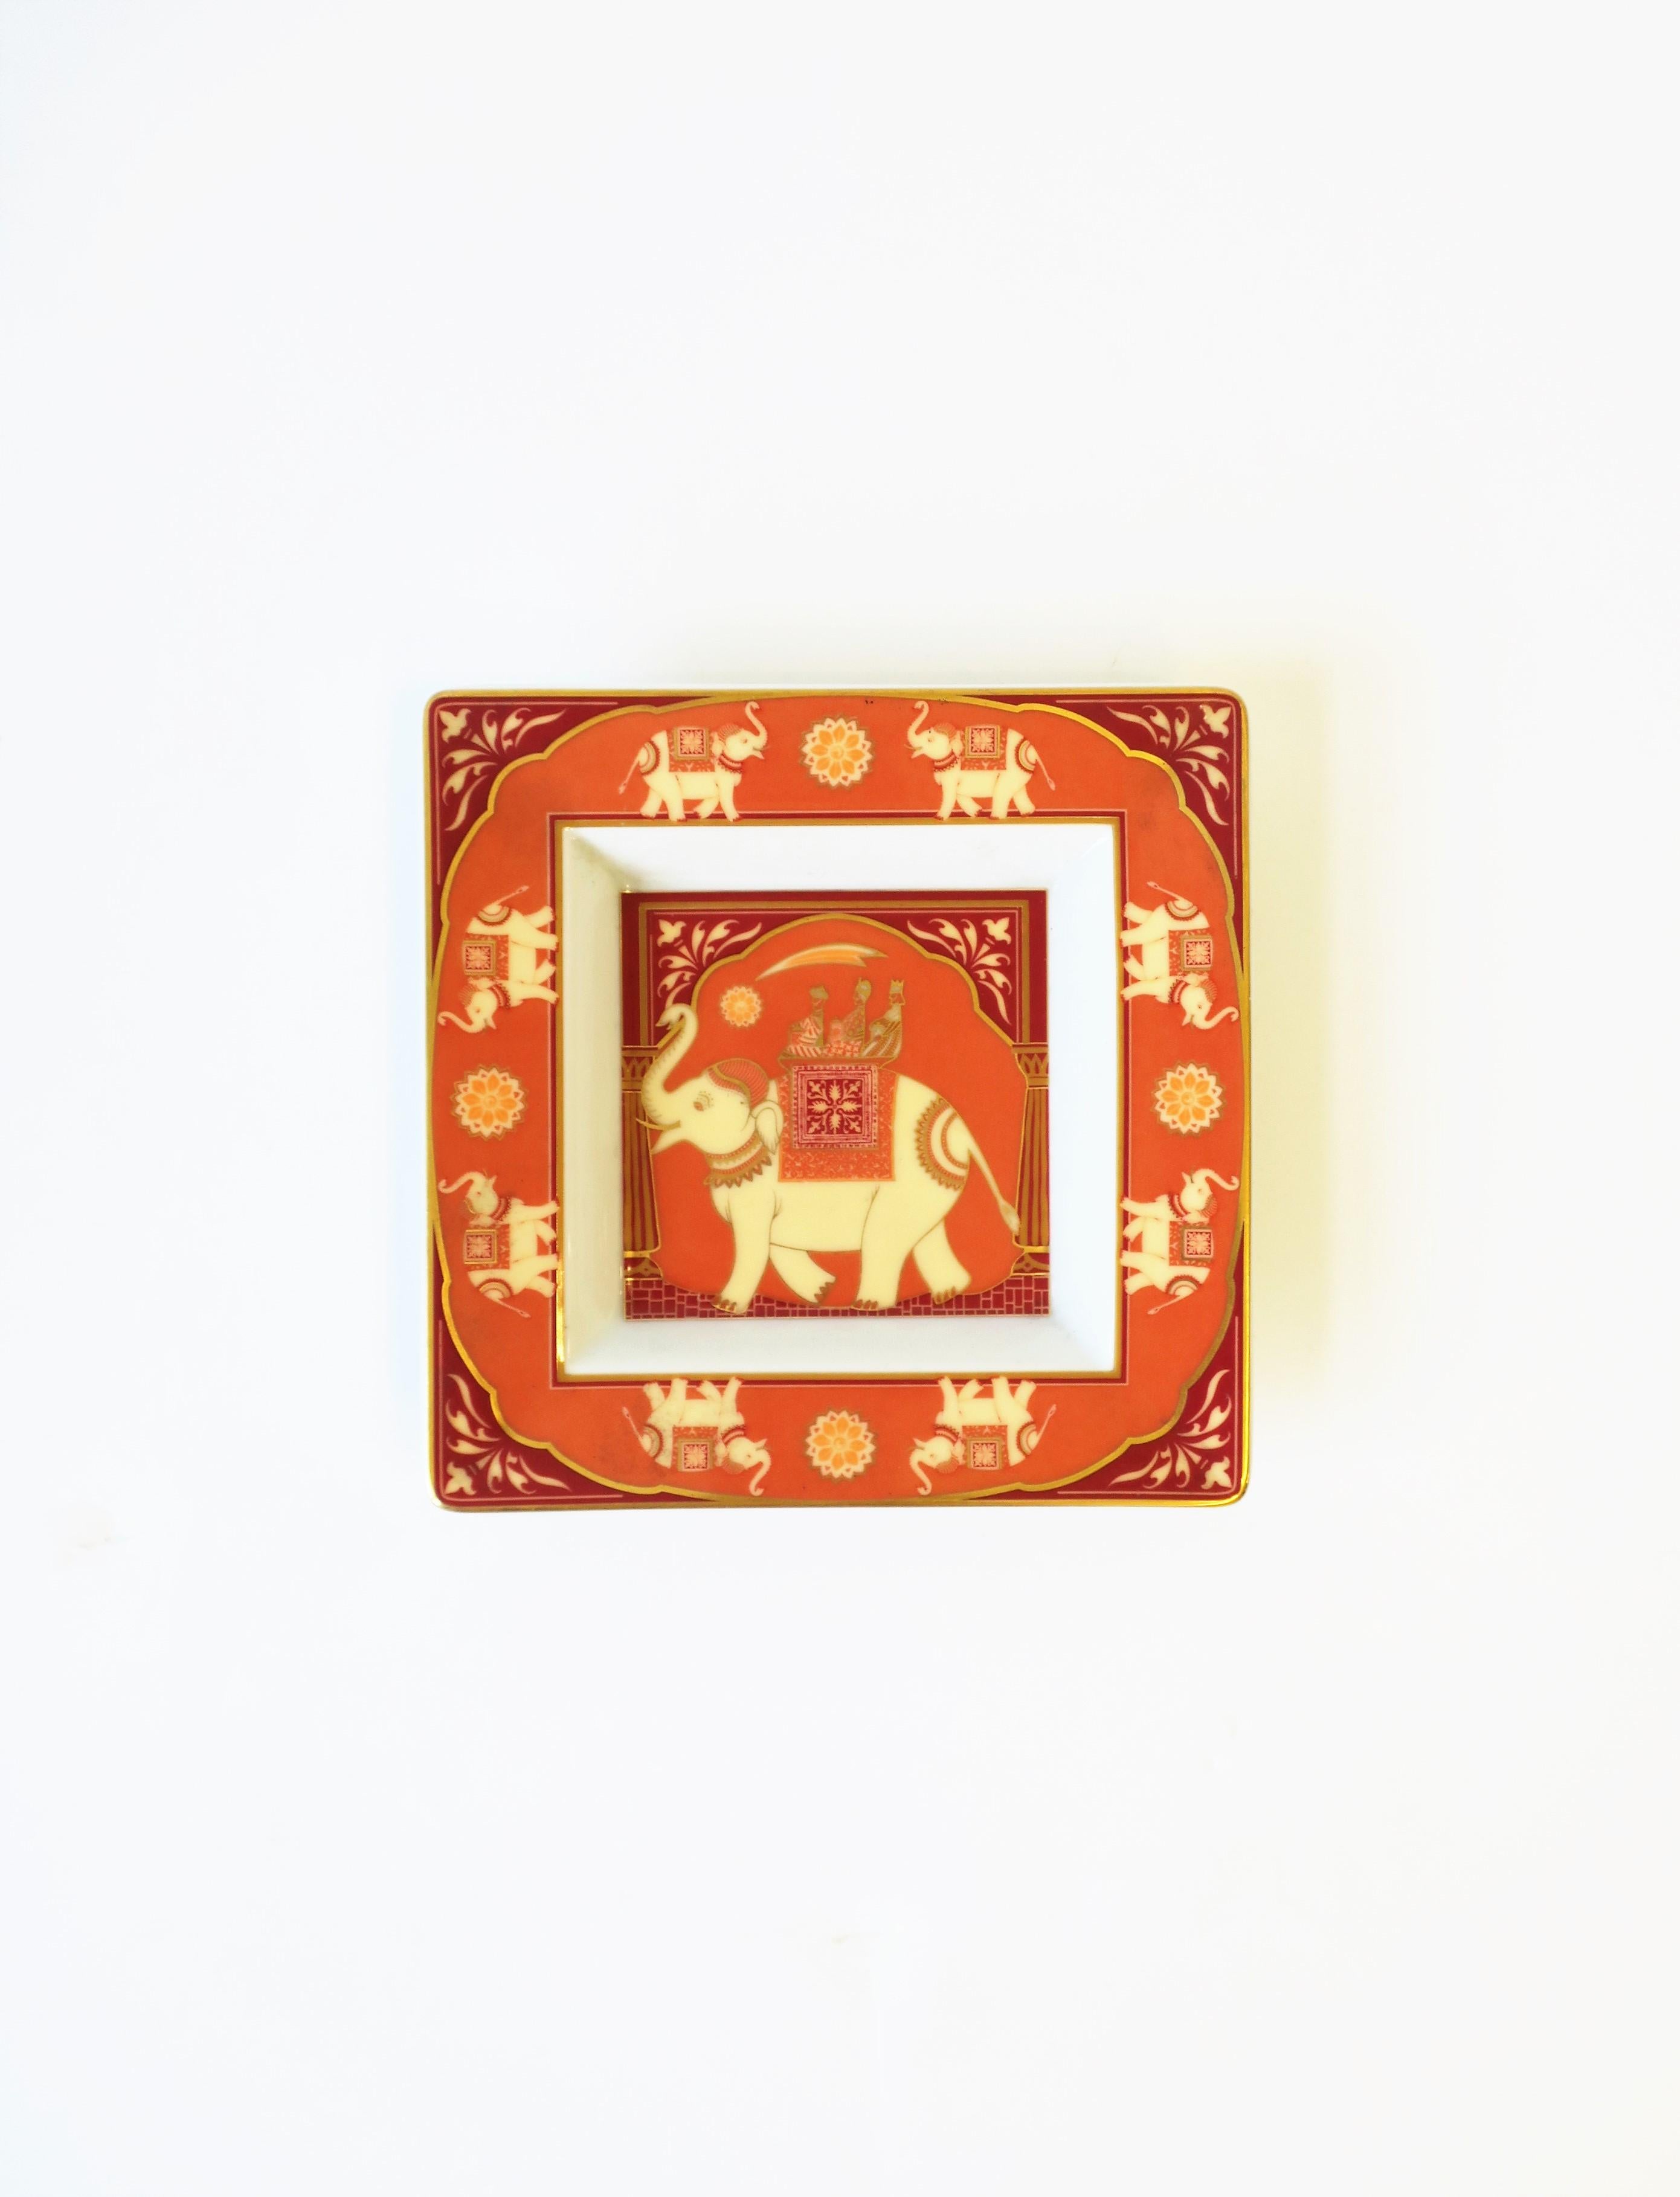 Eine schöne deutsche Schmuckschale aus weißem Porzellan mit Elefantenmotiv von Rosenthal, um das 20. Jahrhundert, Deutschland. Die Schale ist quadratisch, mit einem großen Elefanten in der Mitte und kleineren Elefanten am Rand, in Orange-, Creme-